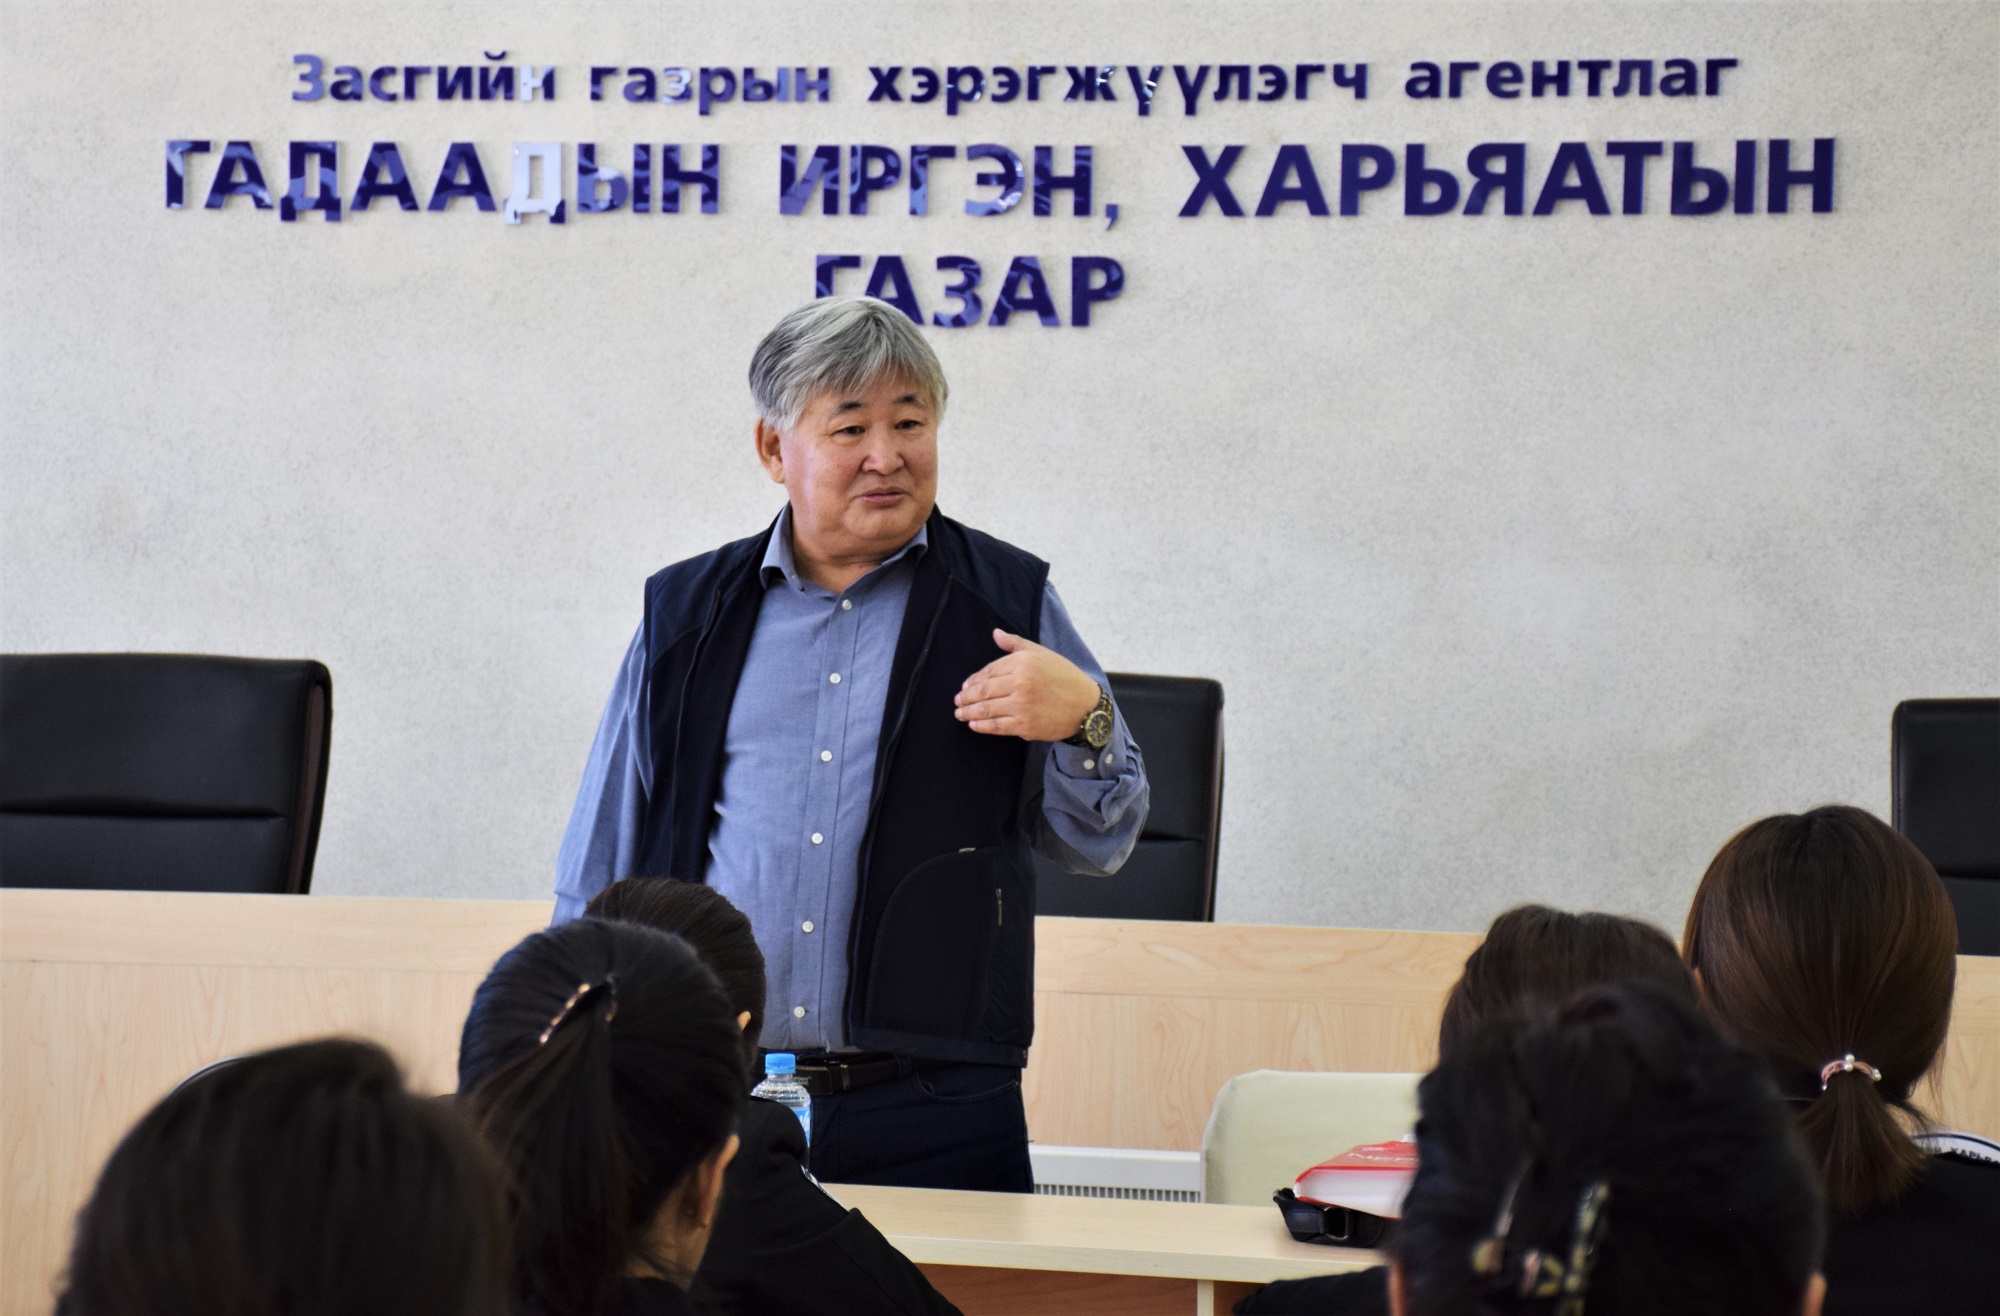 Зохиолч, нийтлэлч Б.Цэнддоо “Монгол хүний сэтгэлгээ ба хандлага” сэдвээр албан хаагчдад лекц уншлаа